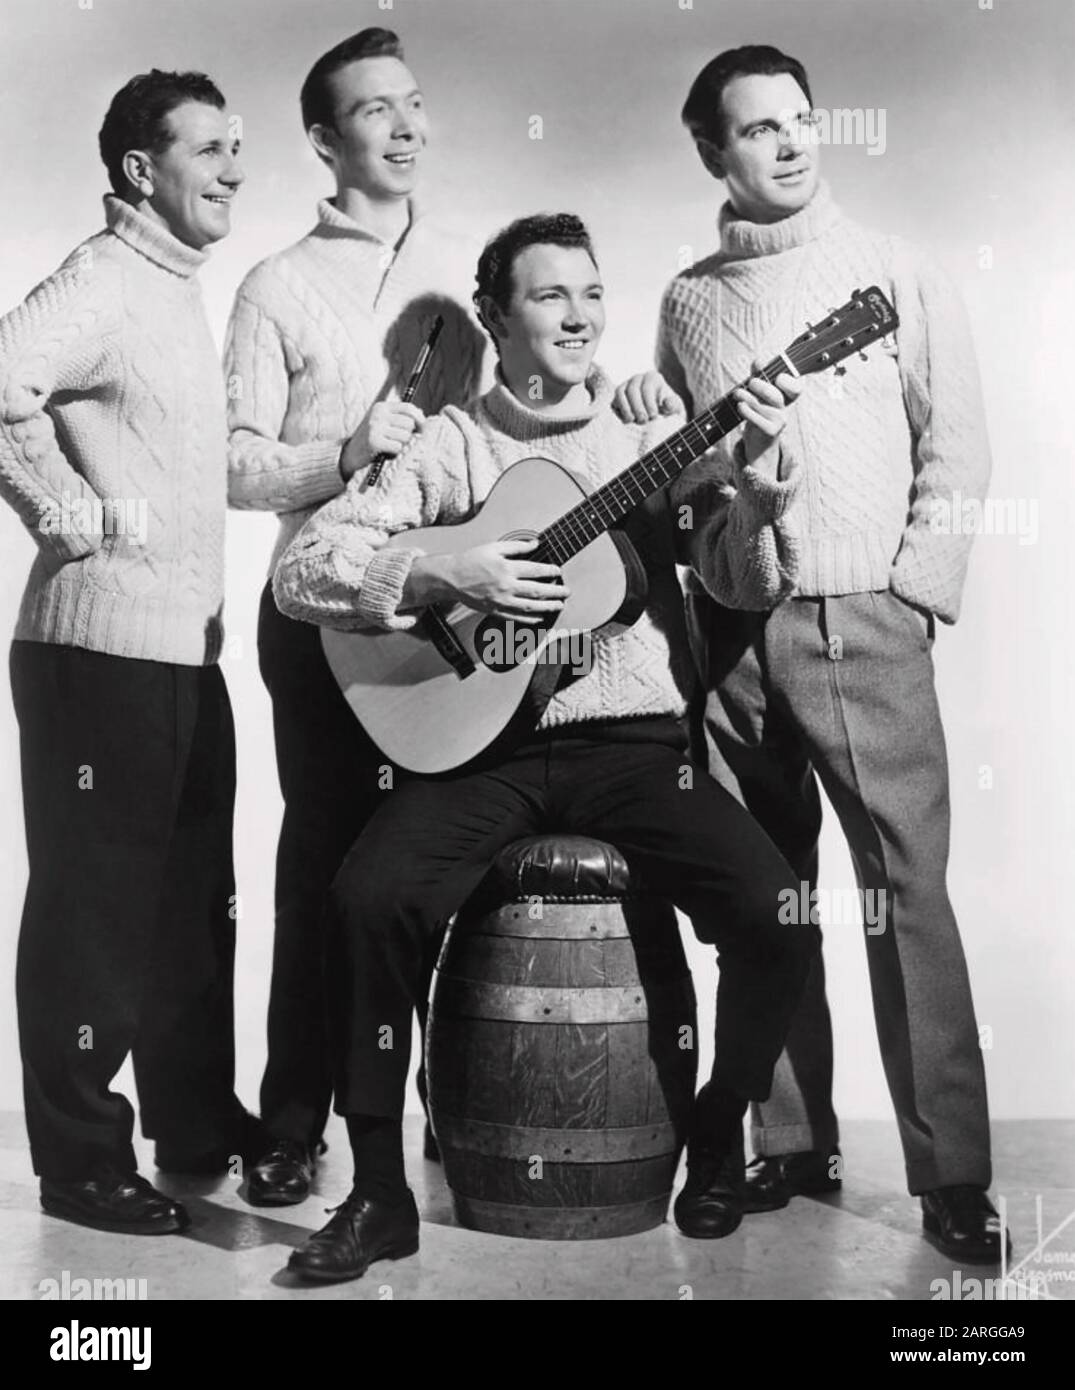 Les FRÈRES CLANCY photo promotionnelle du groupe folklorique irlandais vers 1960 Banque D'Images